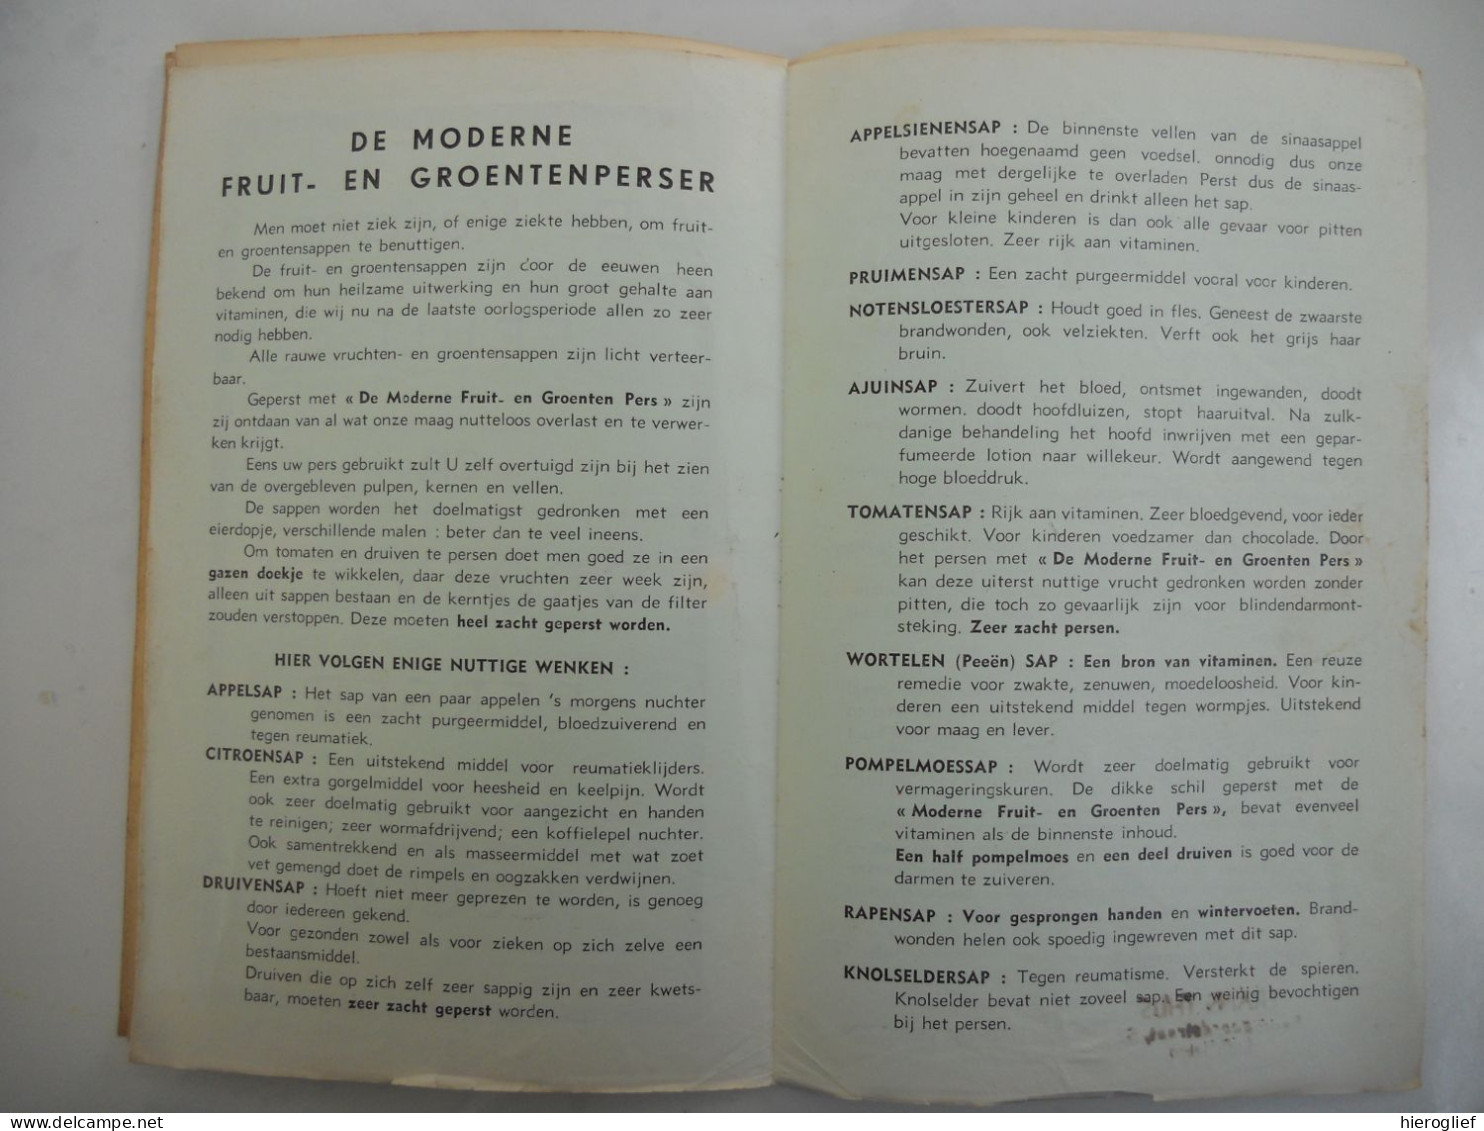 Klein Gezondheids- En Schoonheidsboek - 100 Rauwkost Recepten - Cocco Presse Jaren '50/'60 Gezondheid Voeding - Practical